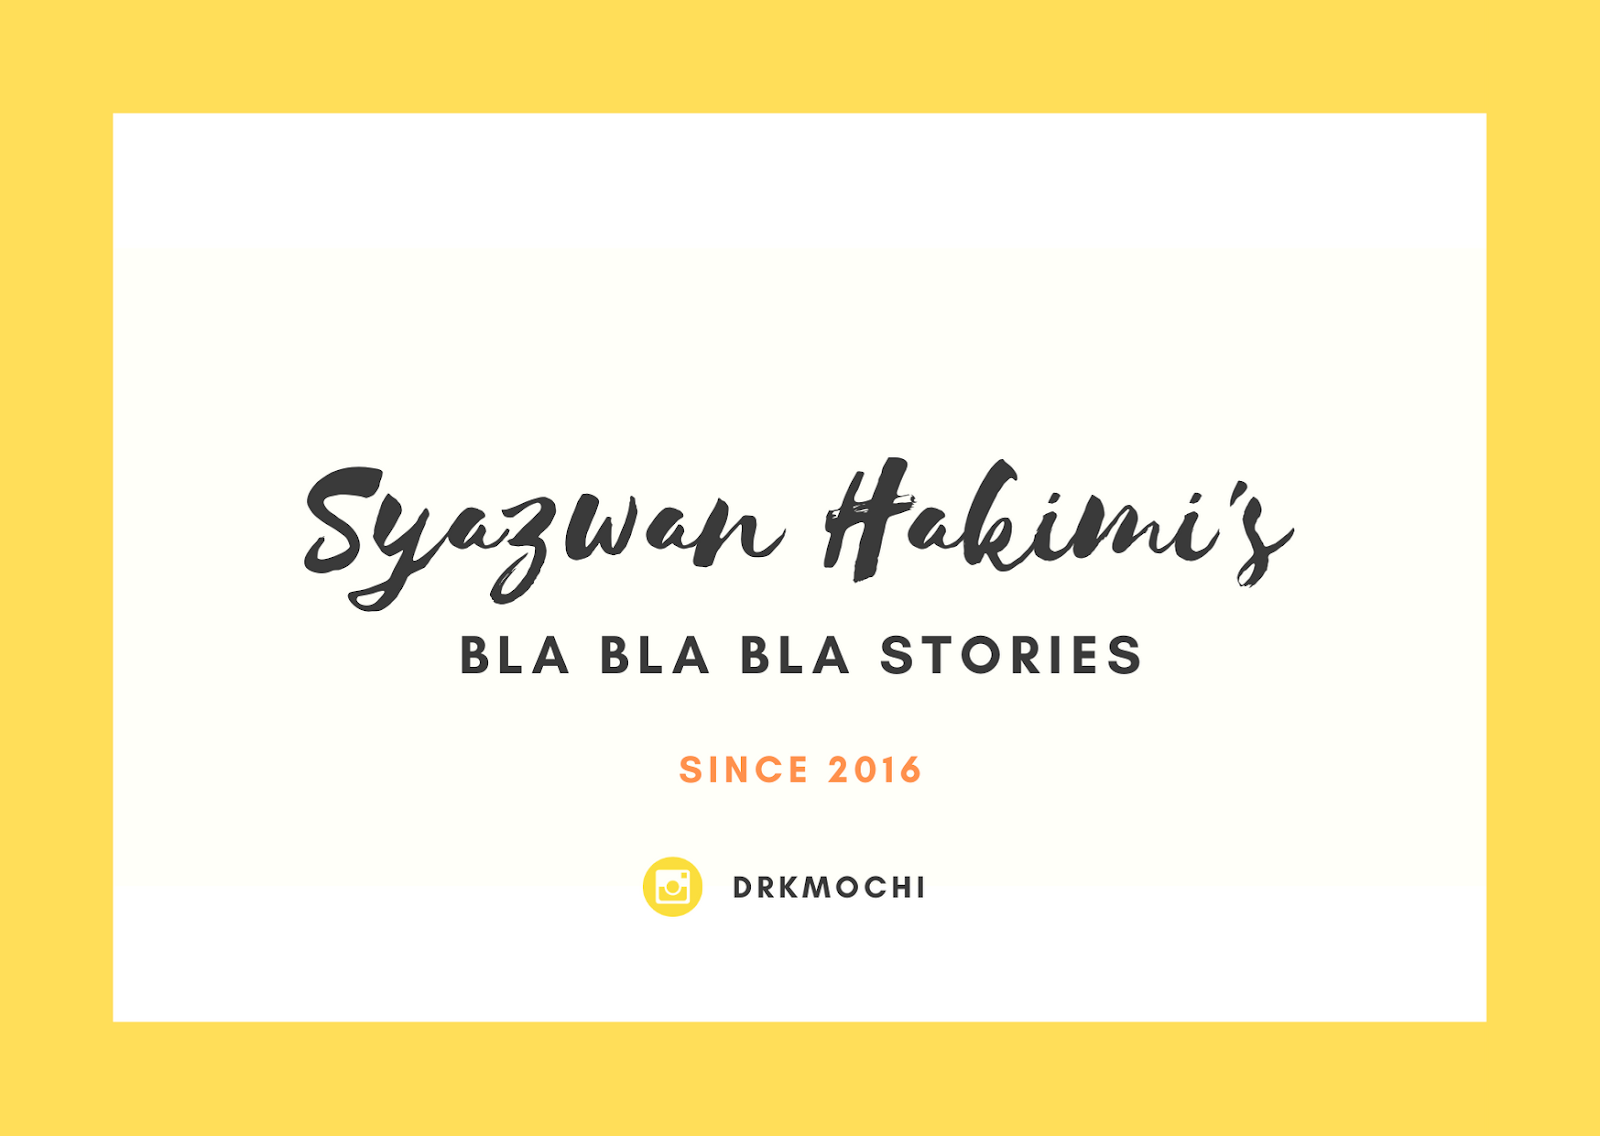 Syazwan Hakimi's Bla Bla Bla Stories